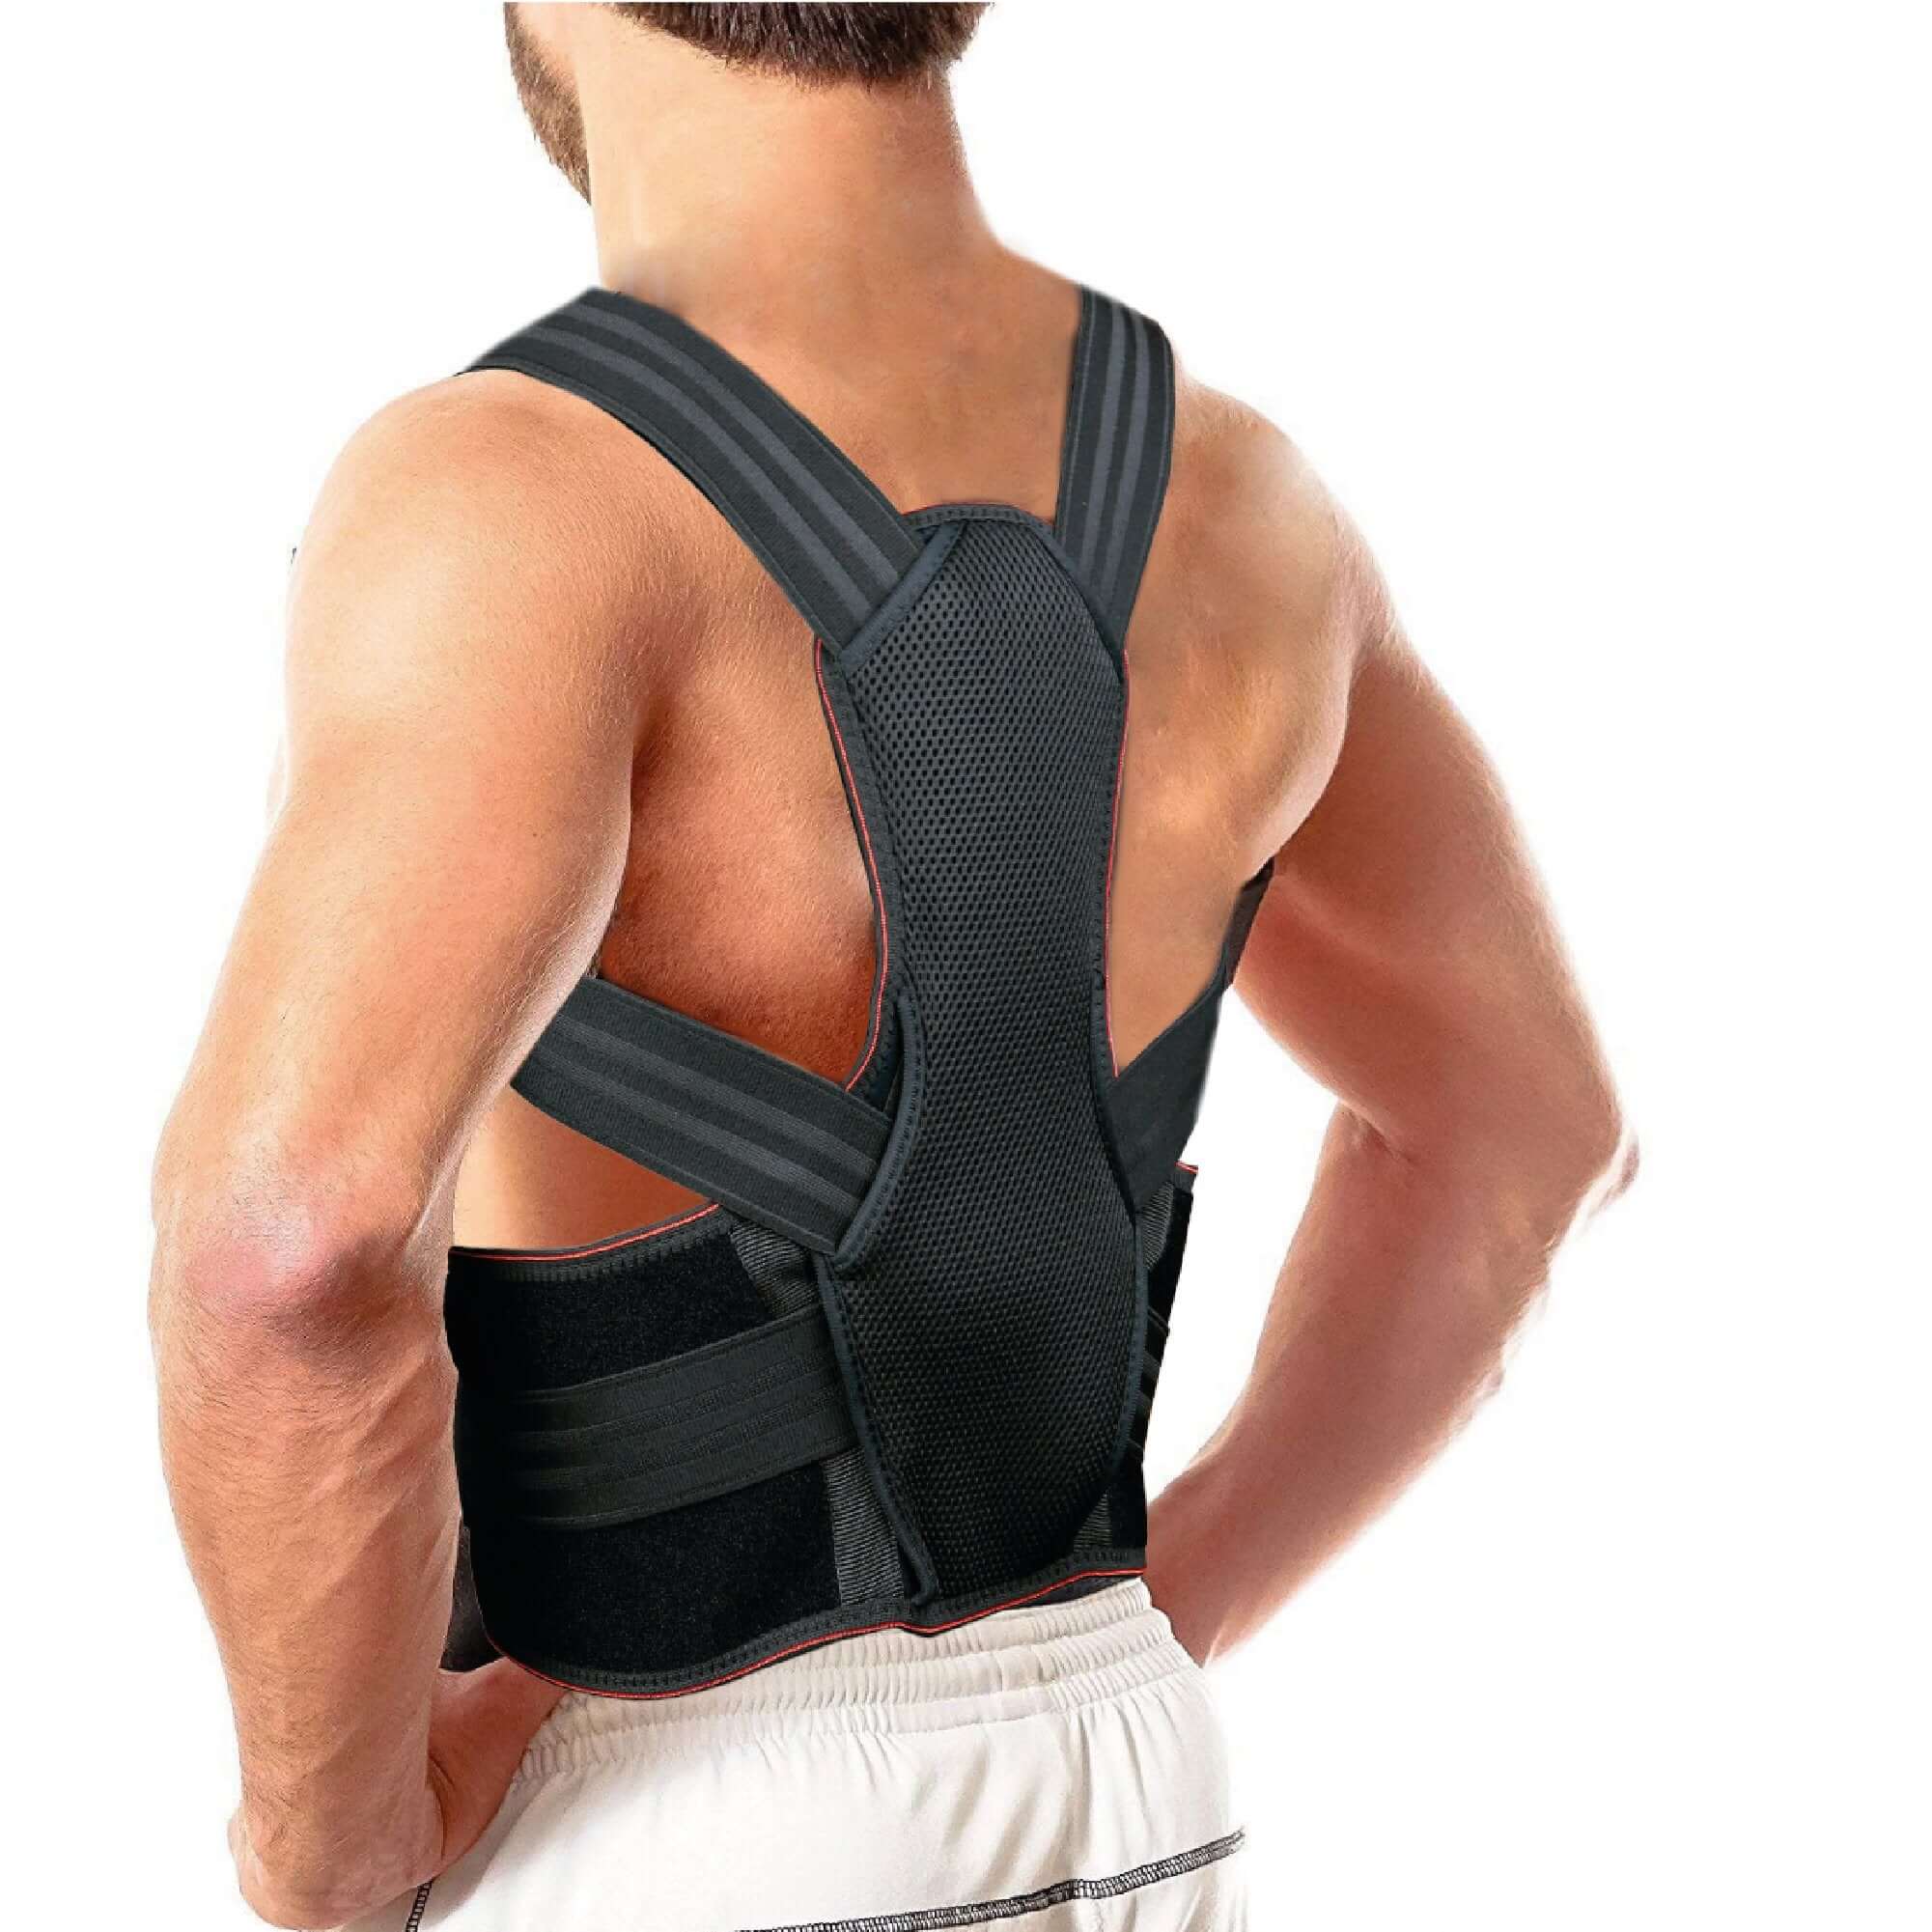 http://kefl.co.uk/cdn/shop/products/back-brace-posture-corrector-spinal-support-upper-and-lower-back-support-adjustable-neoprene-belt-strap-628565.jpg?v=1694168940&width=2048